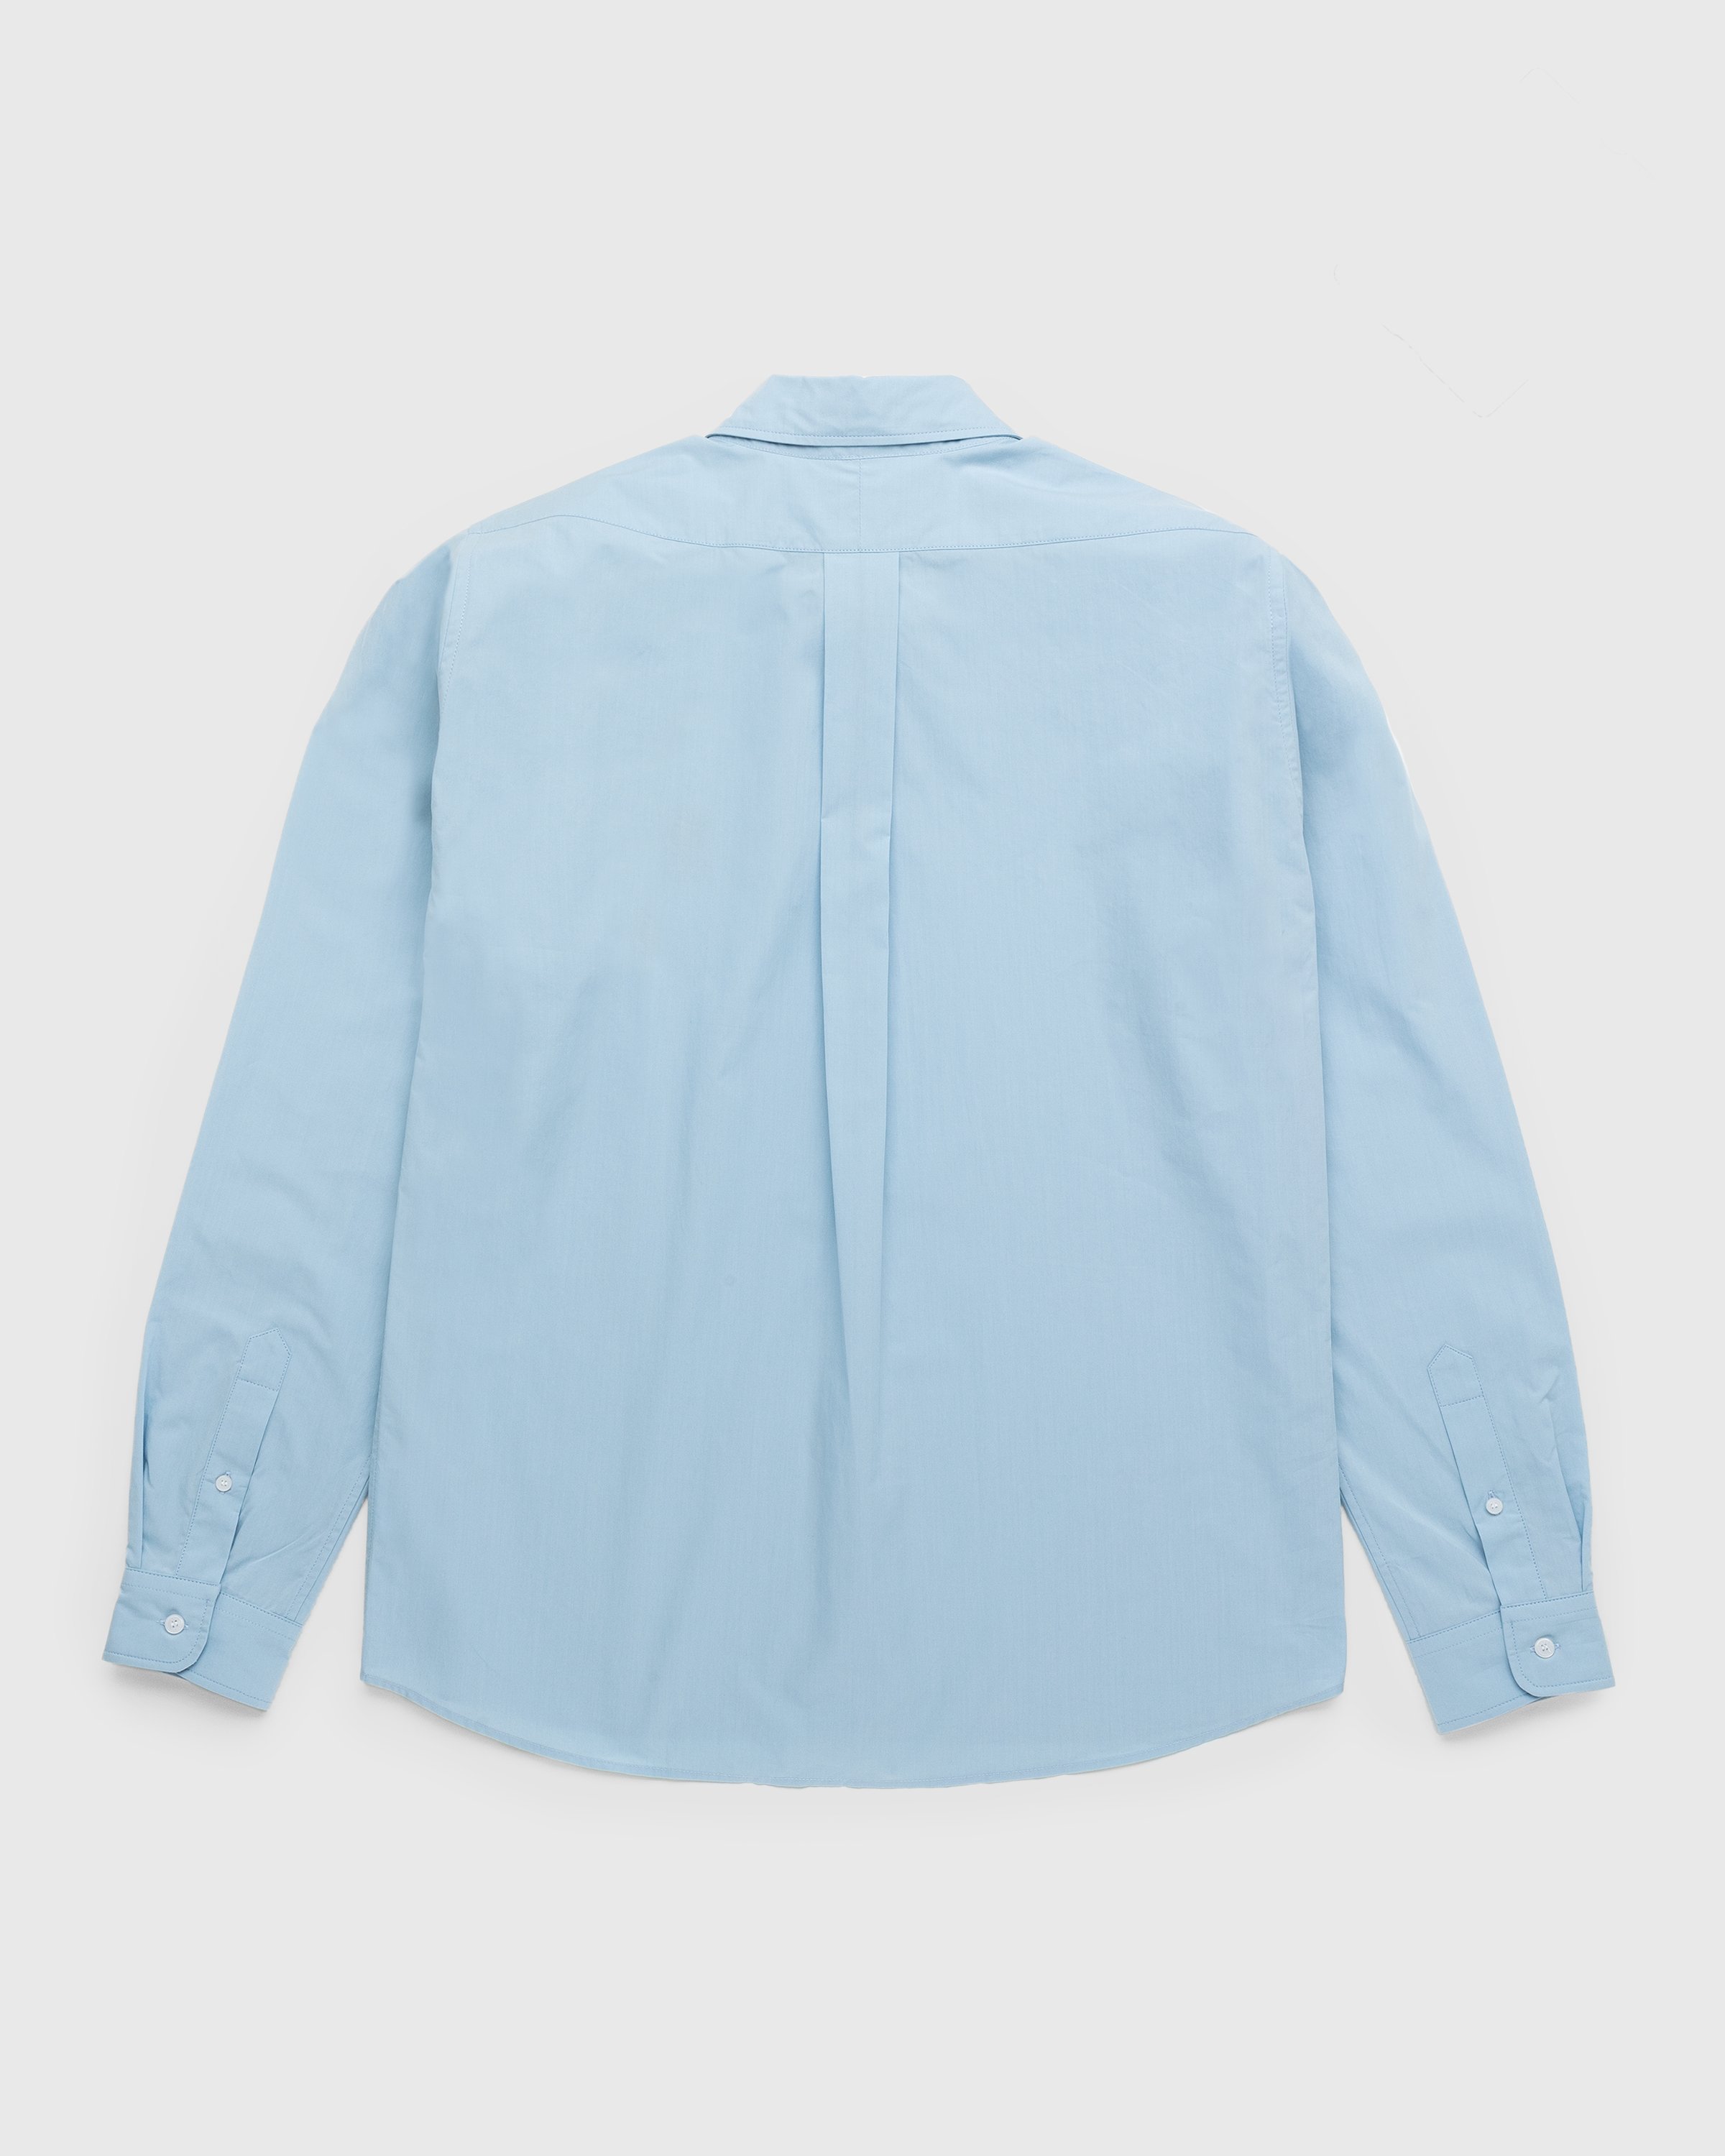 Kenzo - Shirt Sky Blue - Clothing - Blue - Image 2